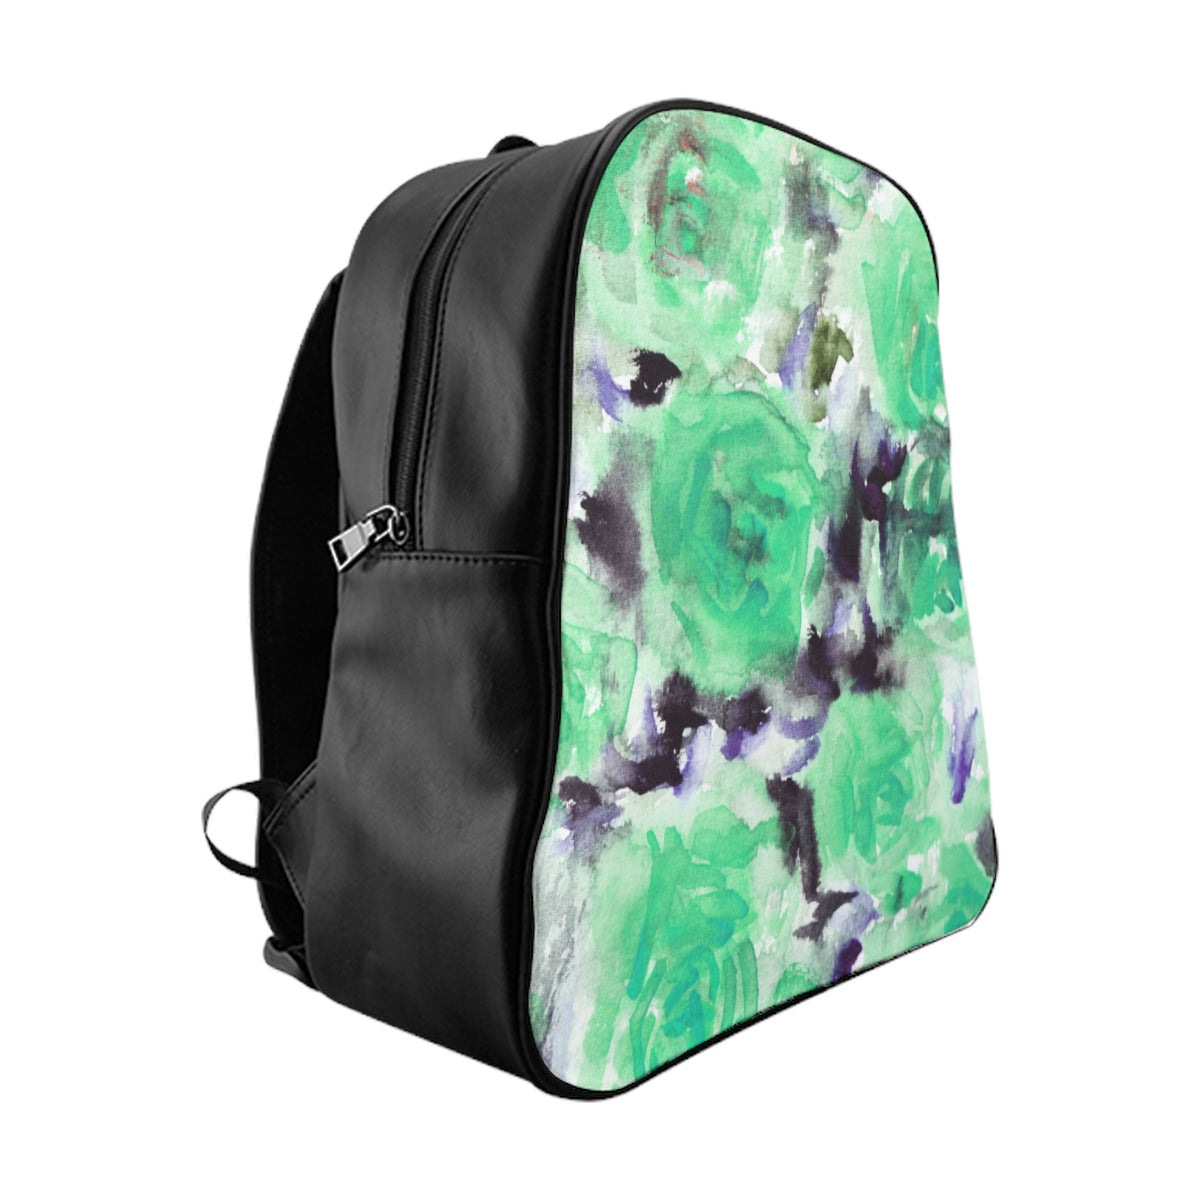 Blue Rose Backpack, Floral Print School Designer Travel School Bag With  Inside Pockets